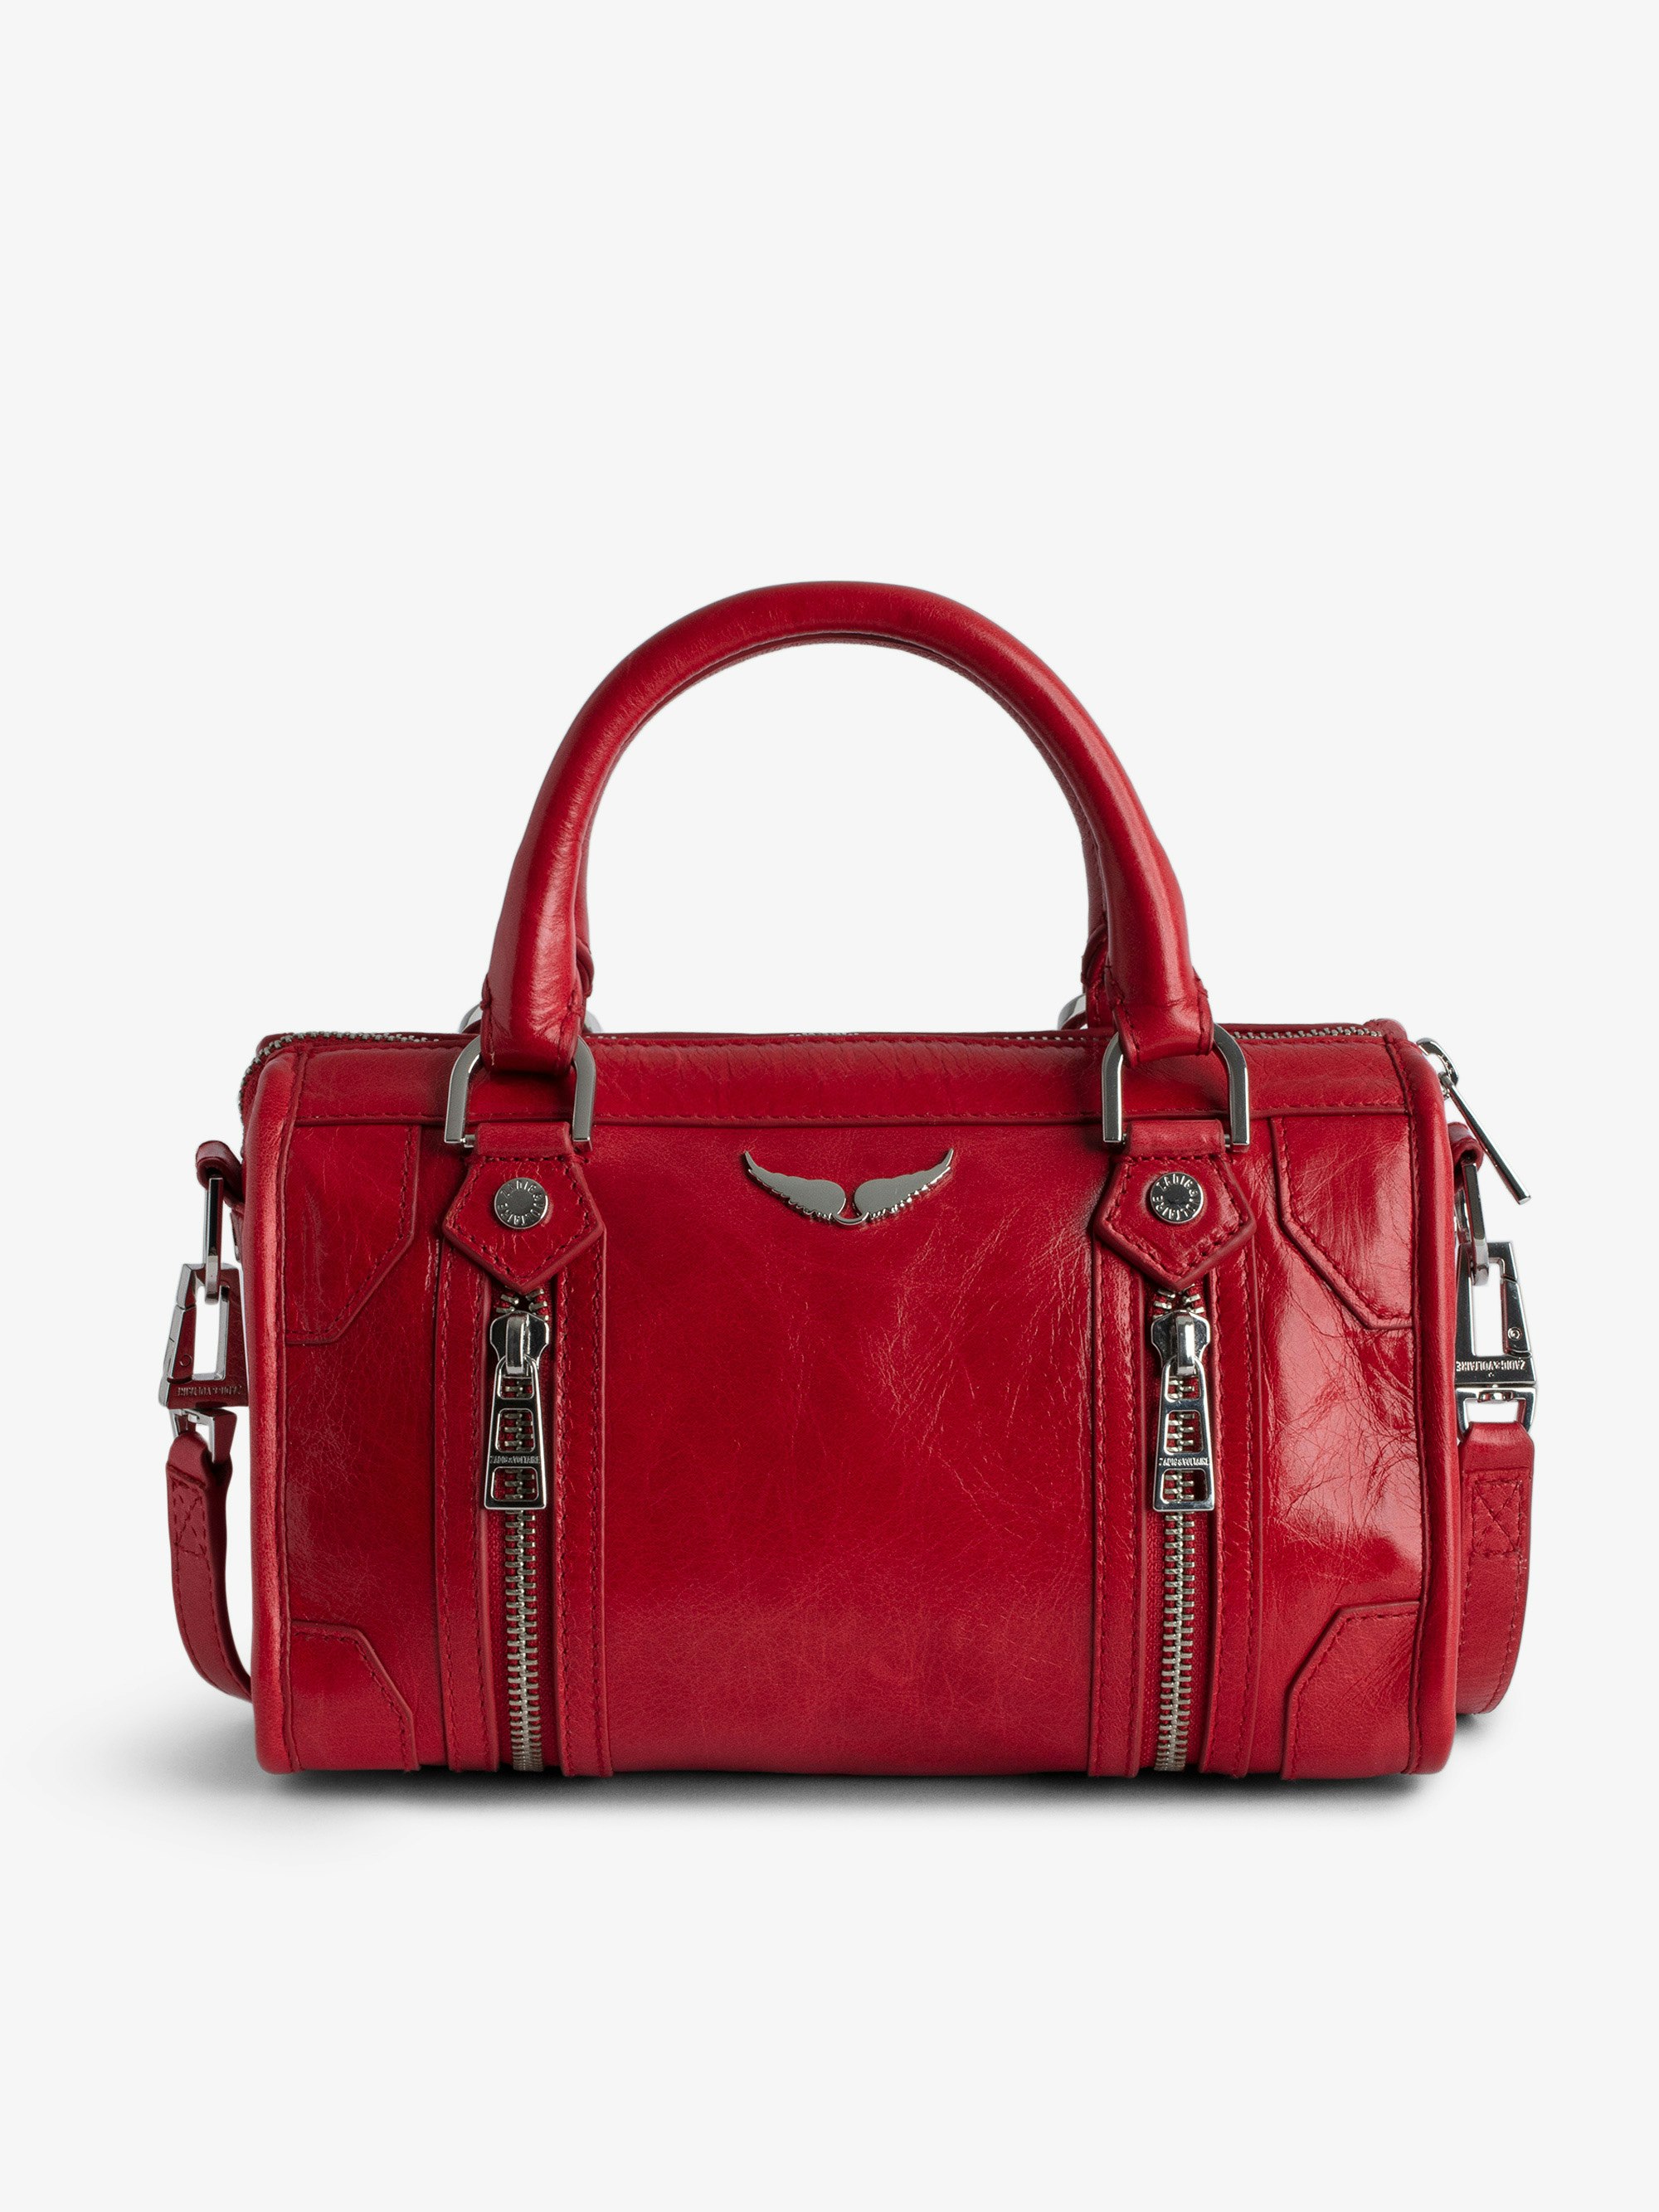 Bolso XS Sunny #2 - Pequeño bolso rojo de charol con efecto vintage con asas cortas y bandolera.